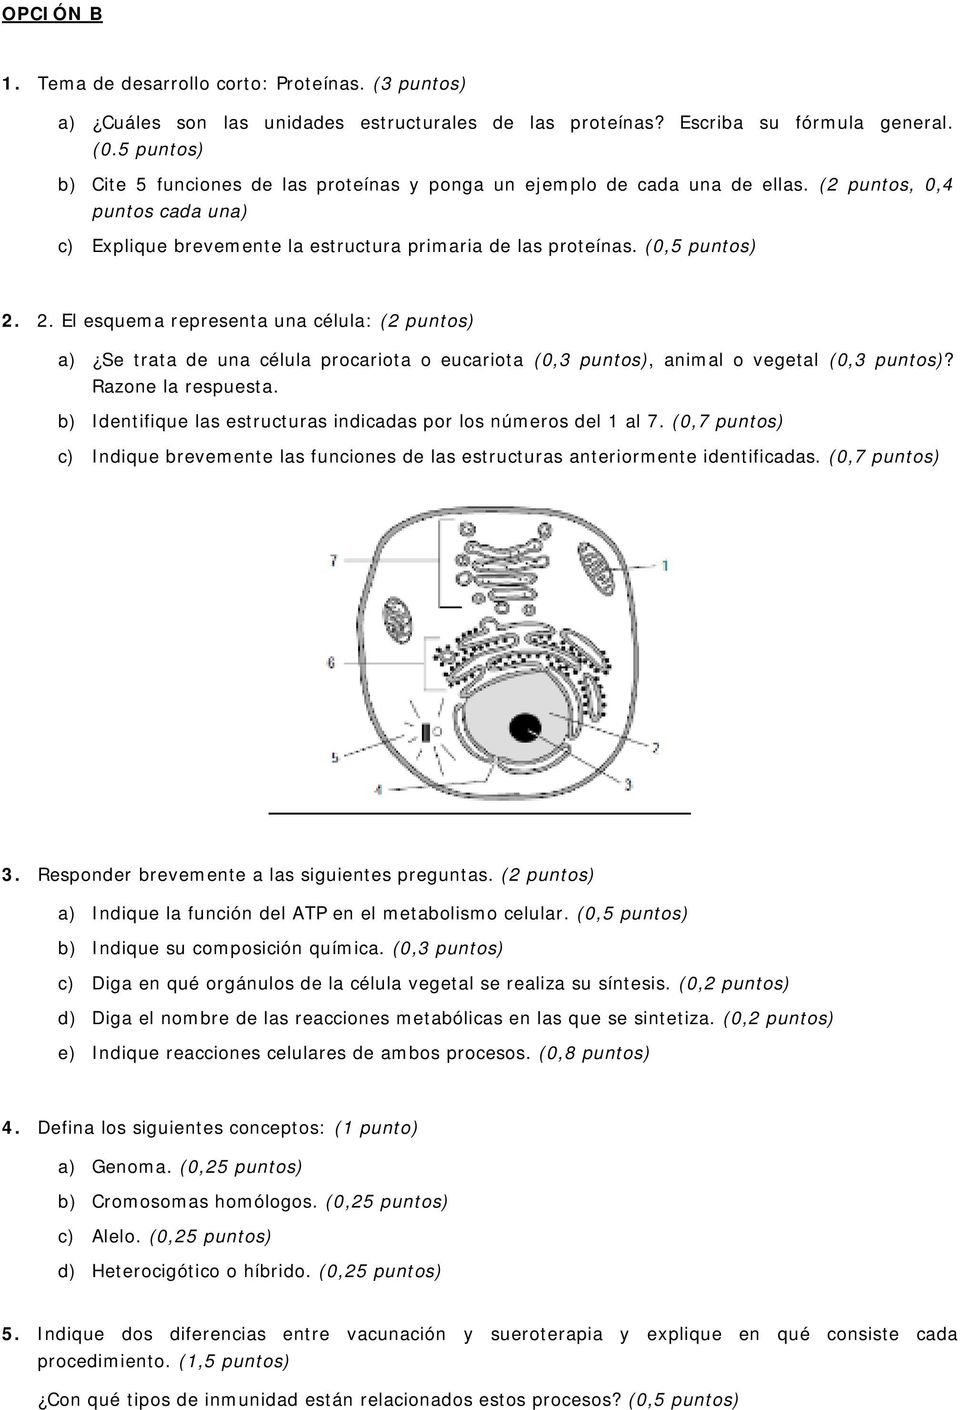 2. El esquema representa una célula: (2 puntos) a) Se trata de una célula procariota o eucariota (0,3 puntos), animal o vegetal (0,3 puntos)? Razone la respuesta.